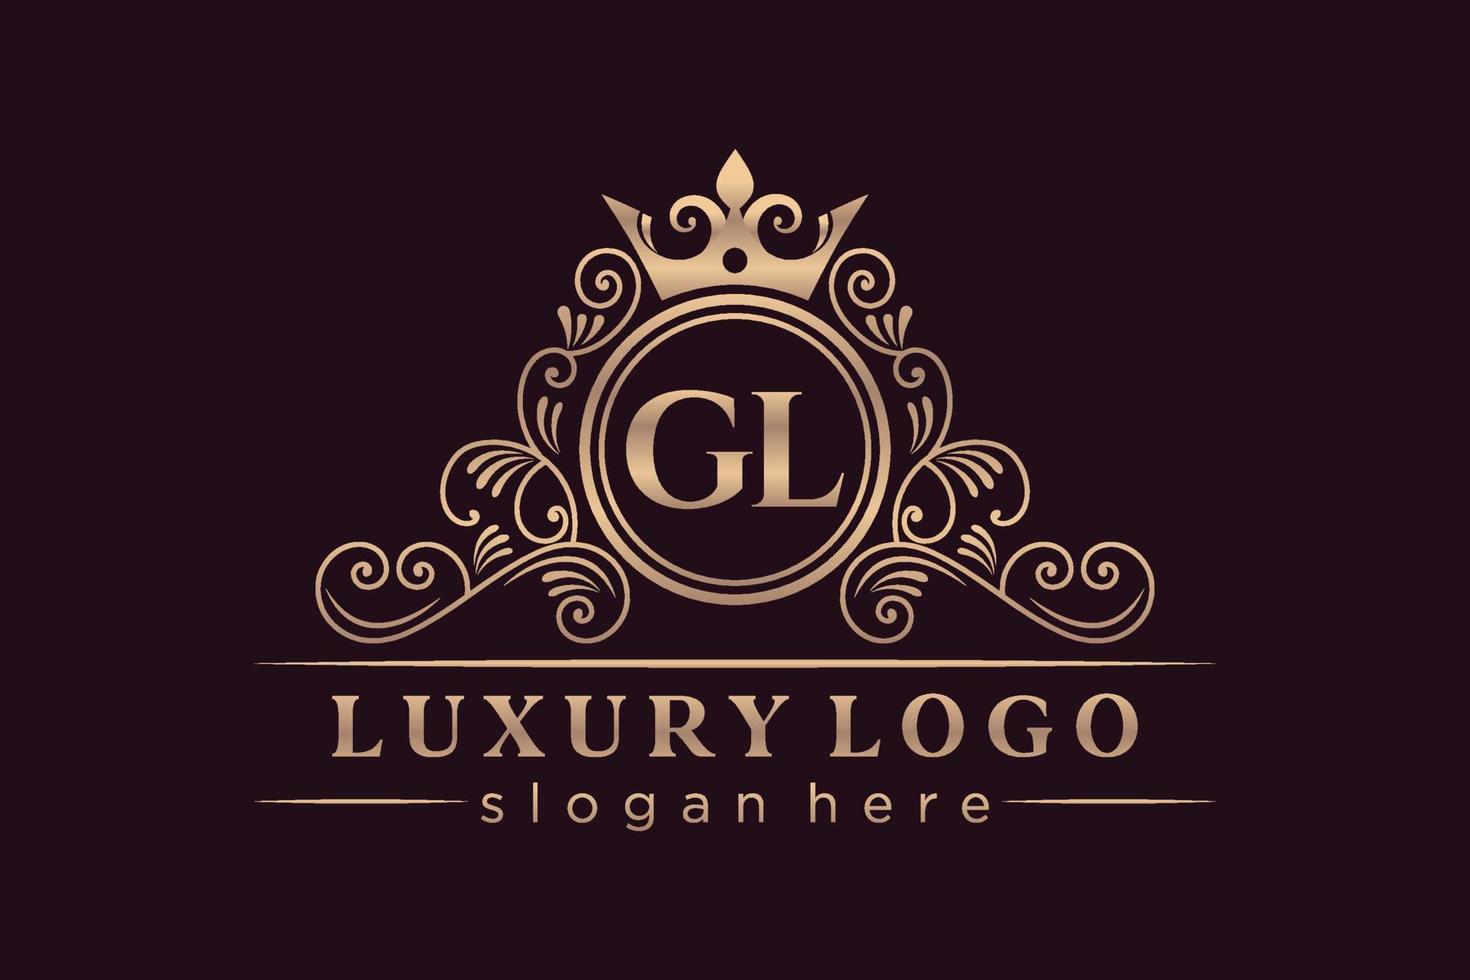 gl letra inicial oro caligráfico femenino floral dibujado a mano monograma heráldico antiguo estilo vintage lujo diseño de logotipo vector premium